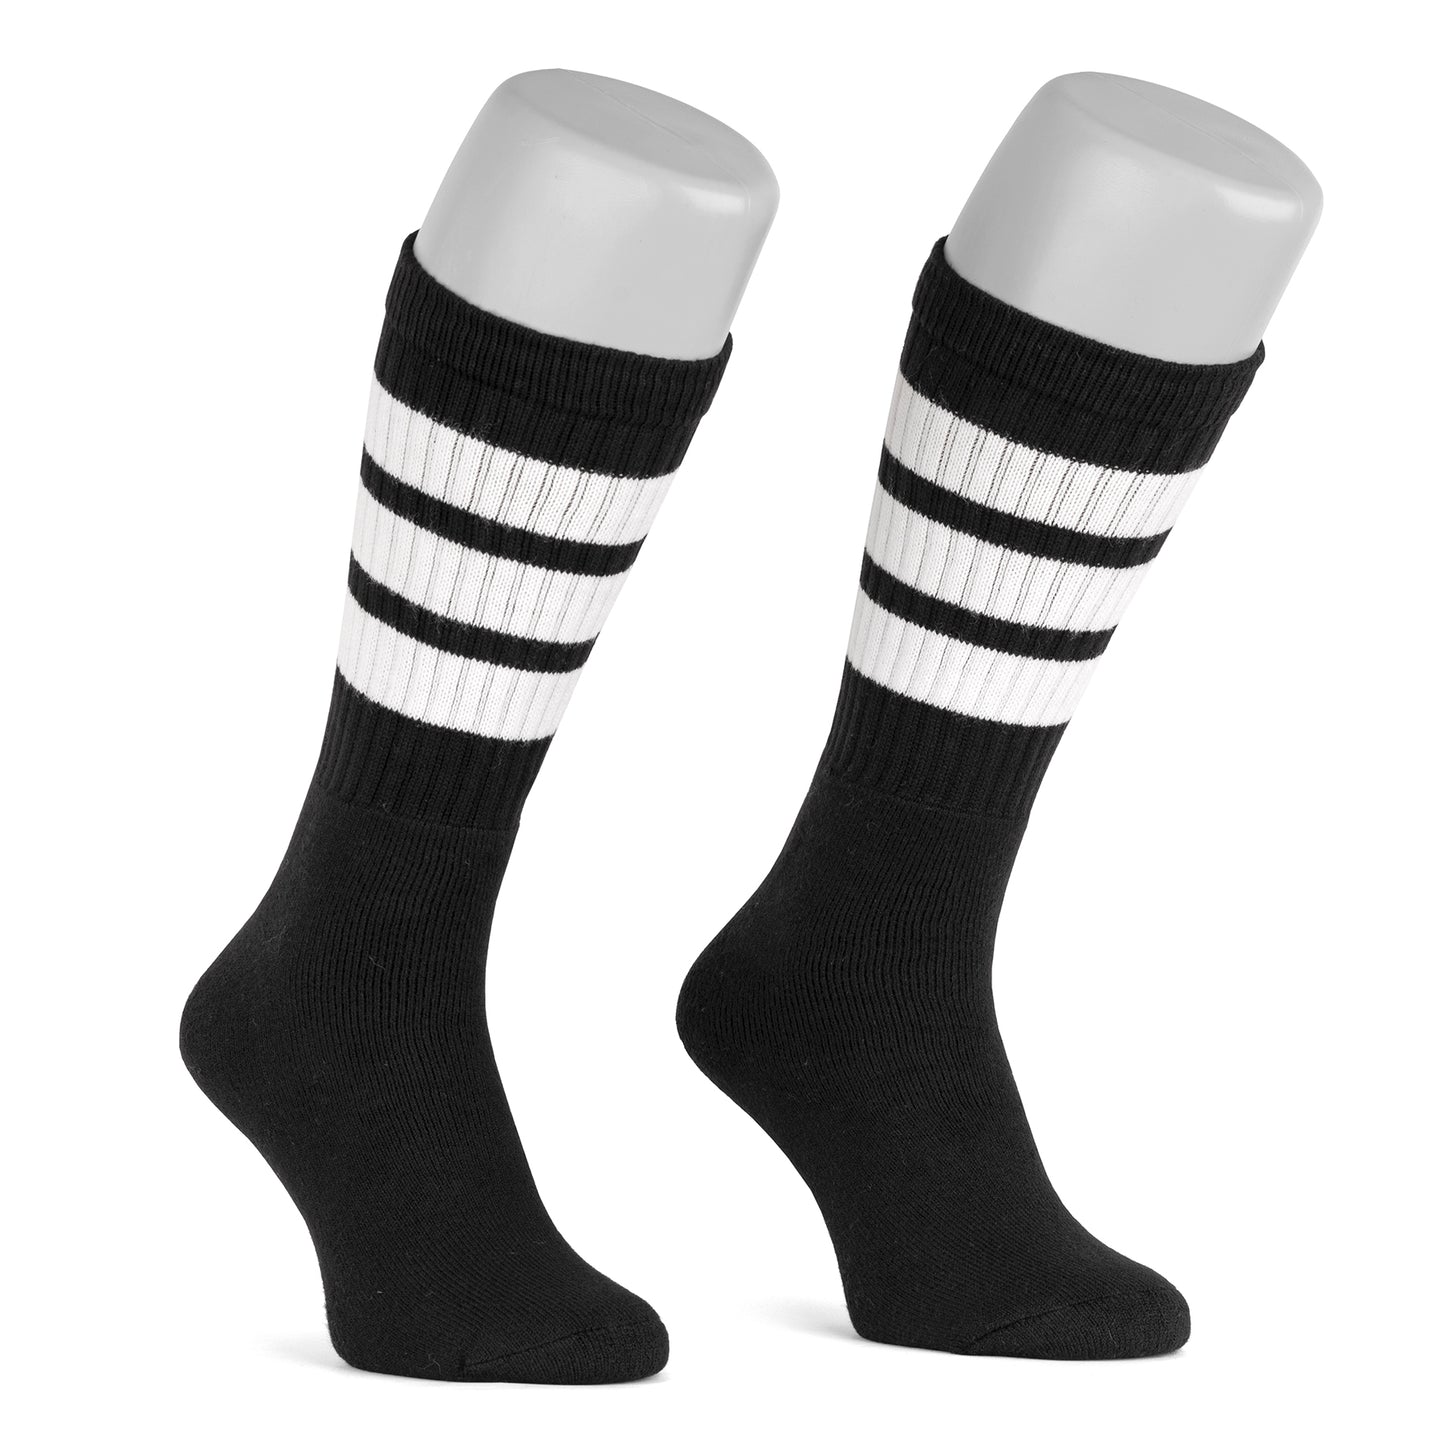 Skatersocks 22 Inch Knee High Tube Socks black - white striped